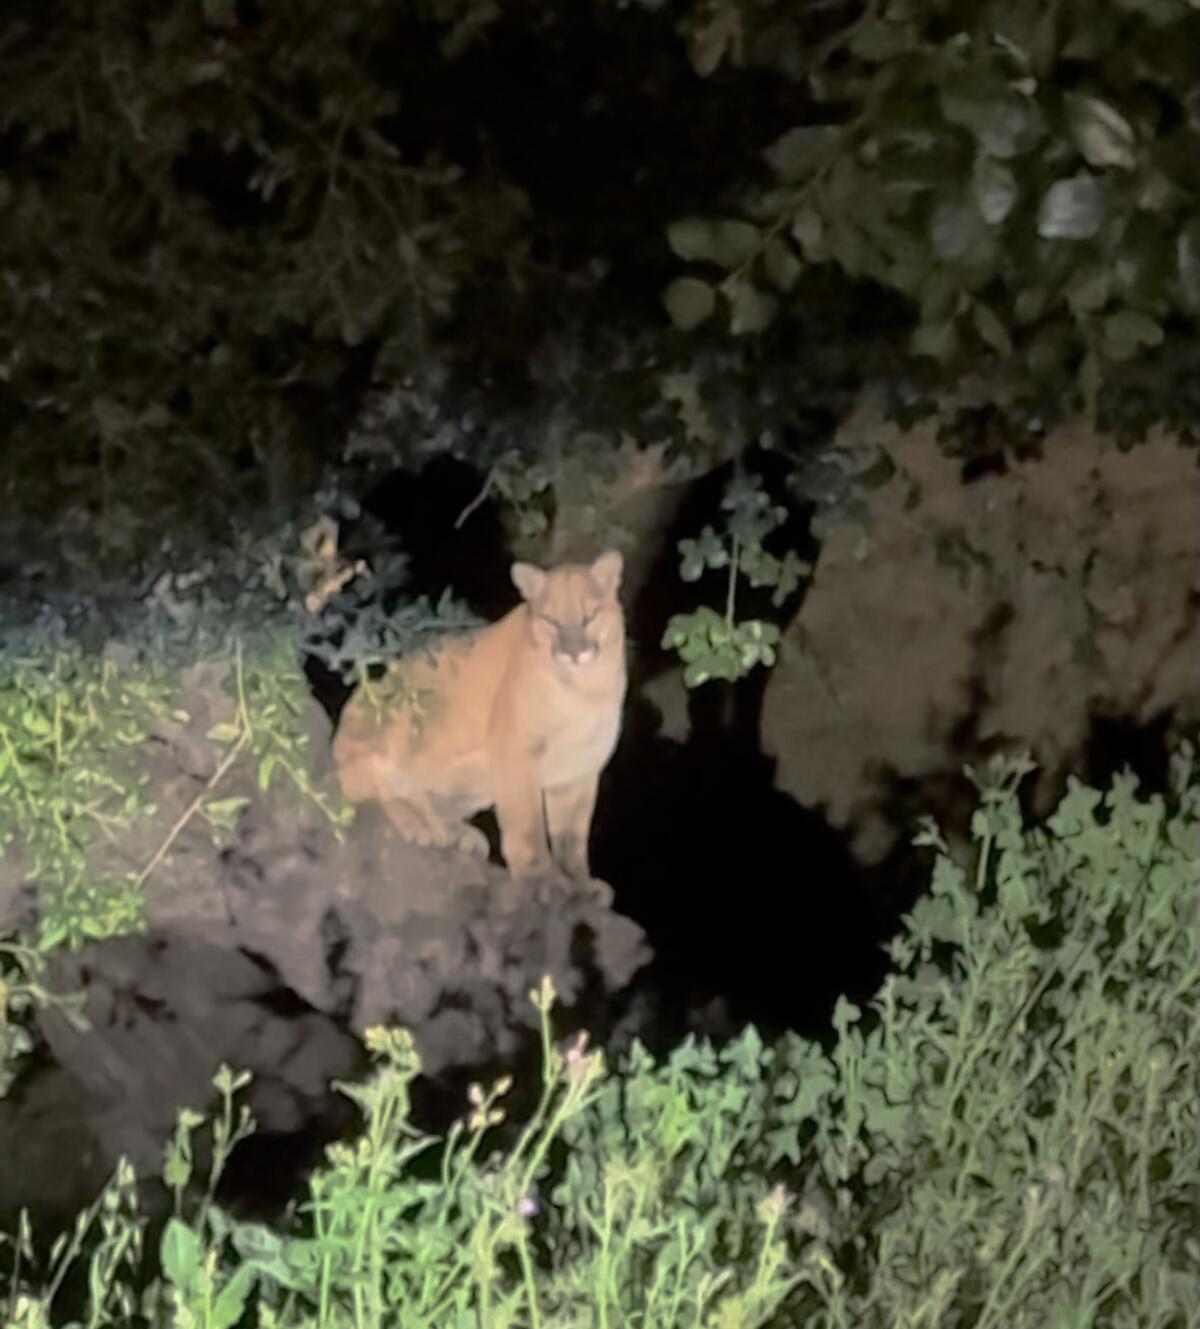 Video still of a mountain lion, illuminated at night